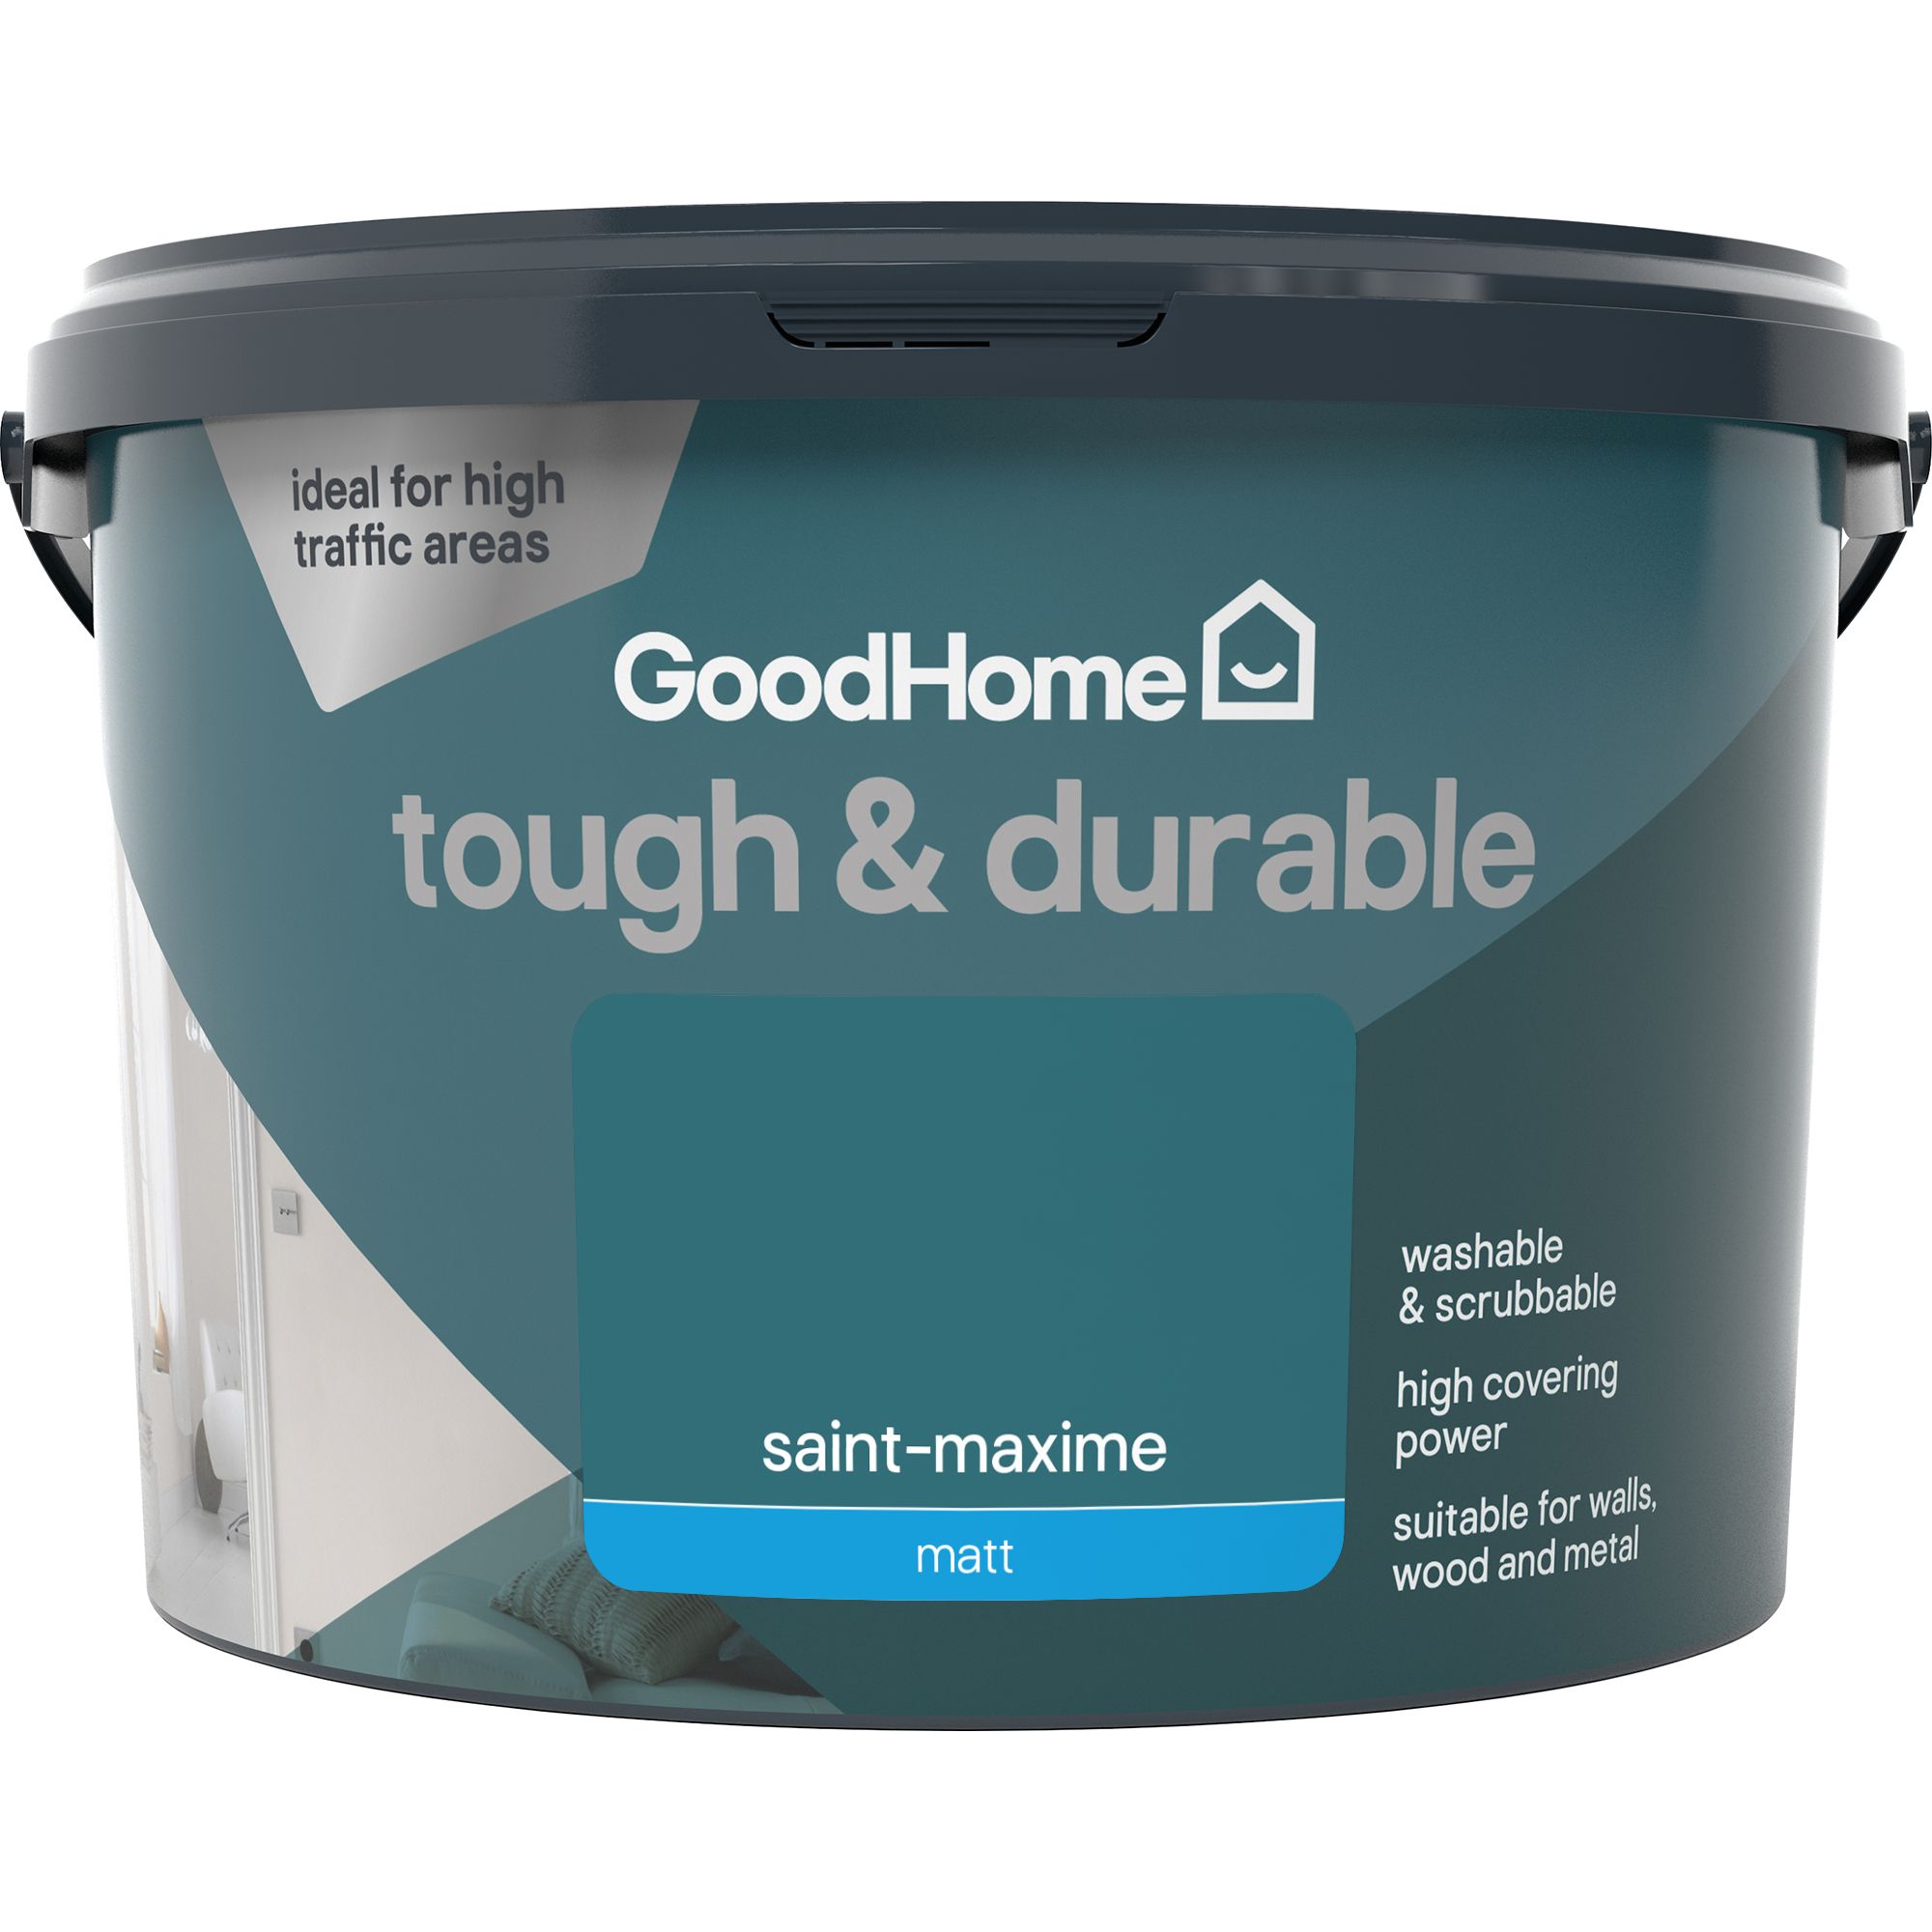 GoodHome Tough & Durable Saint-maxime Matt Emulsion paint, 2.5L